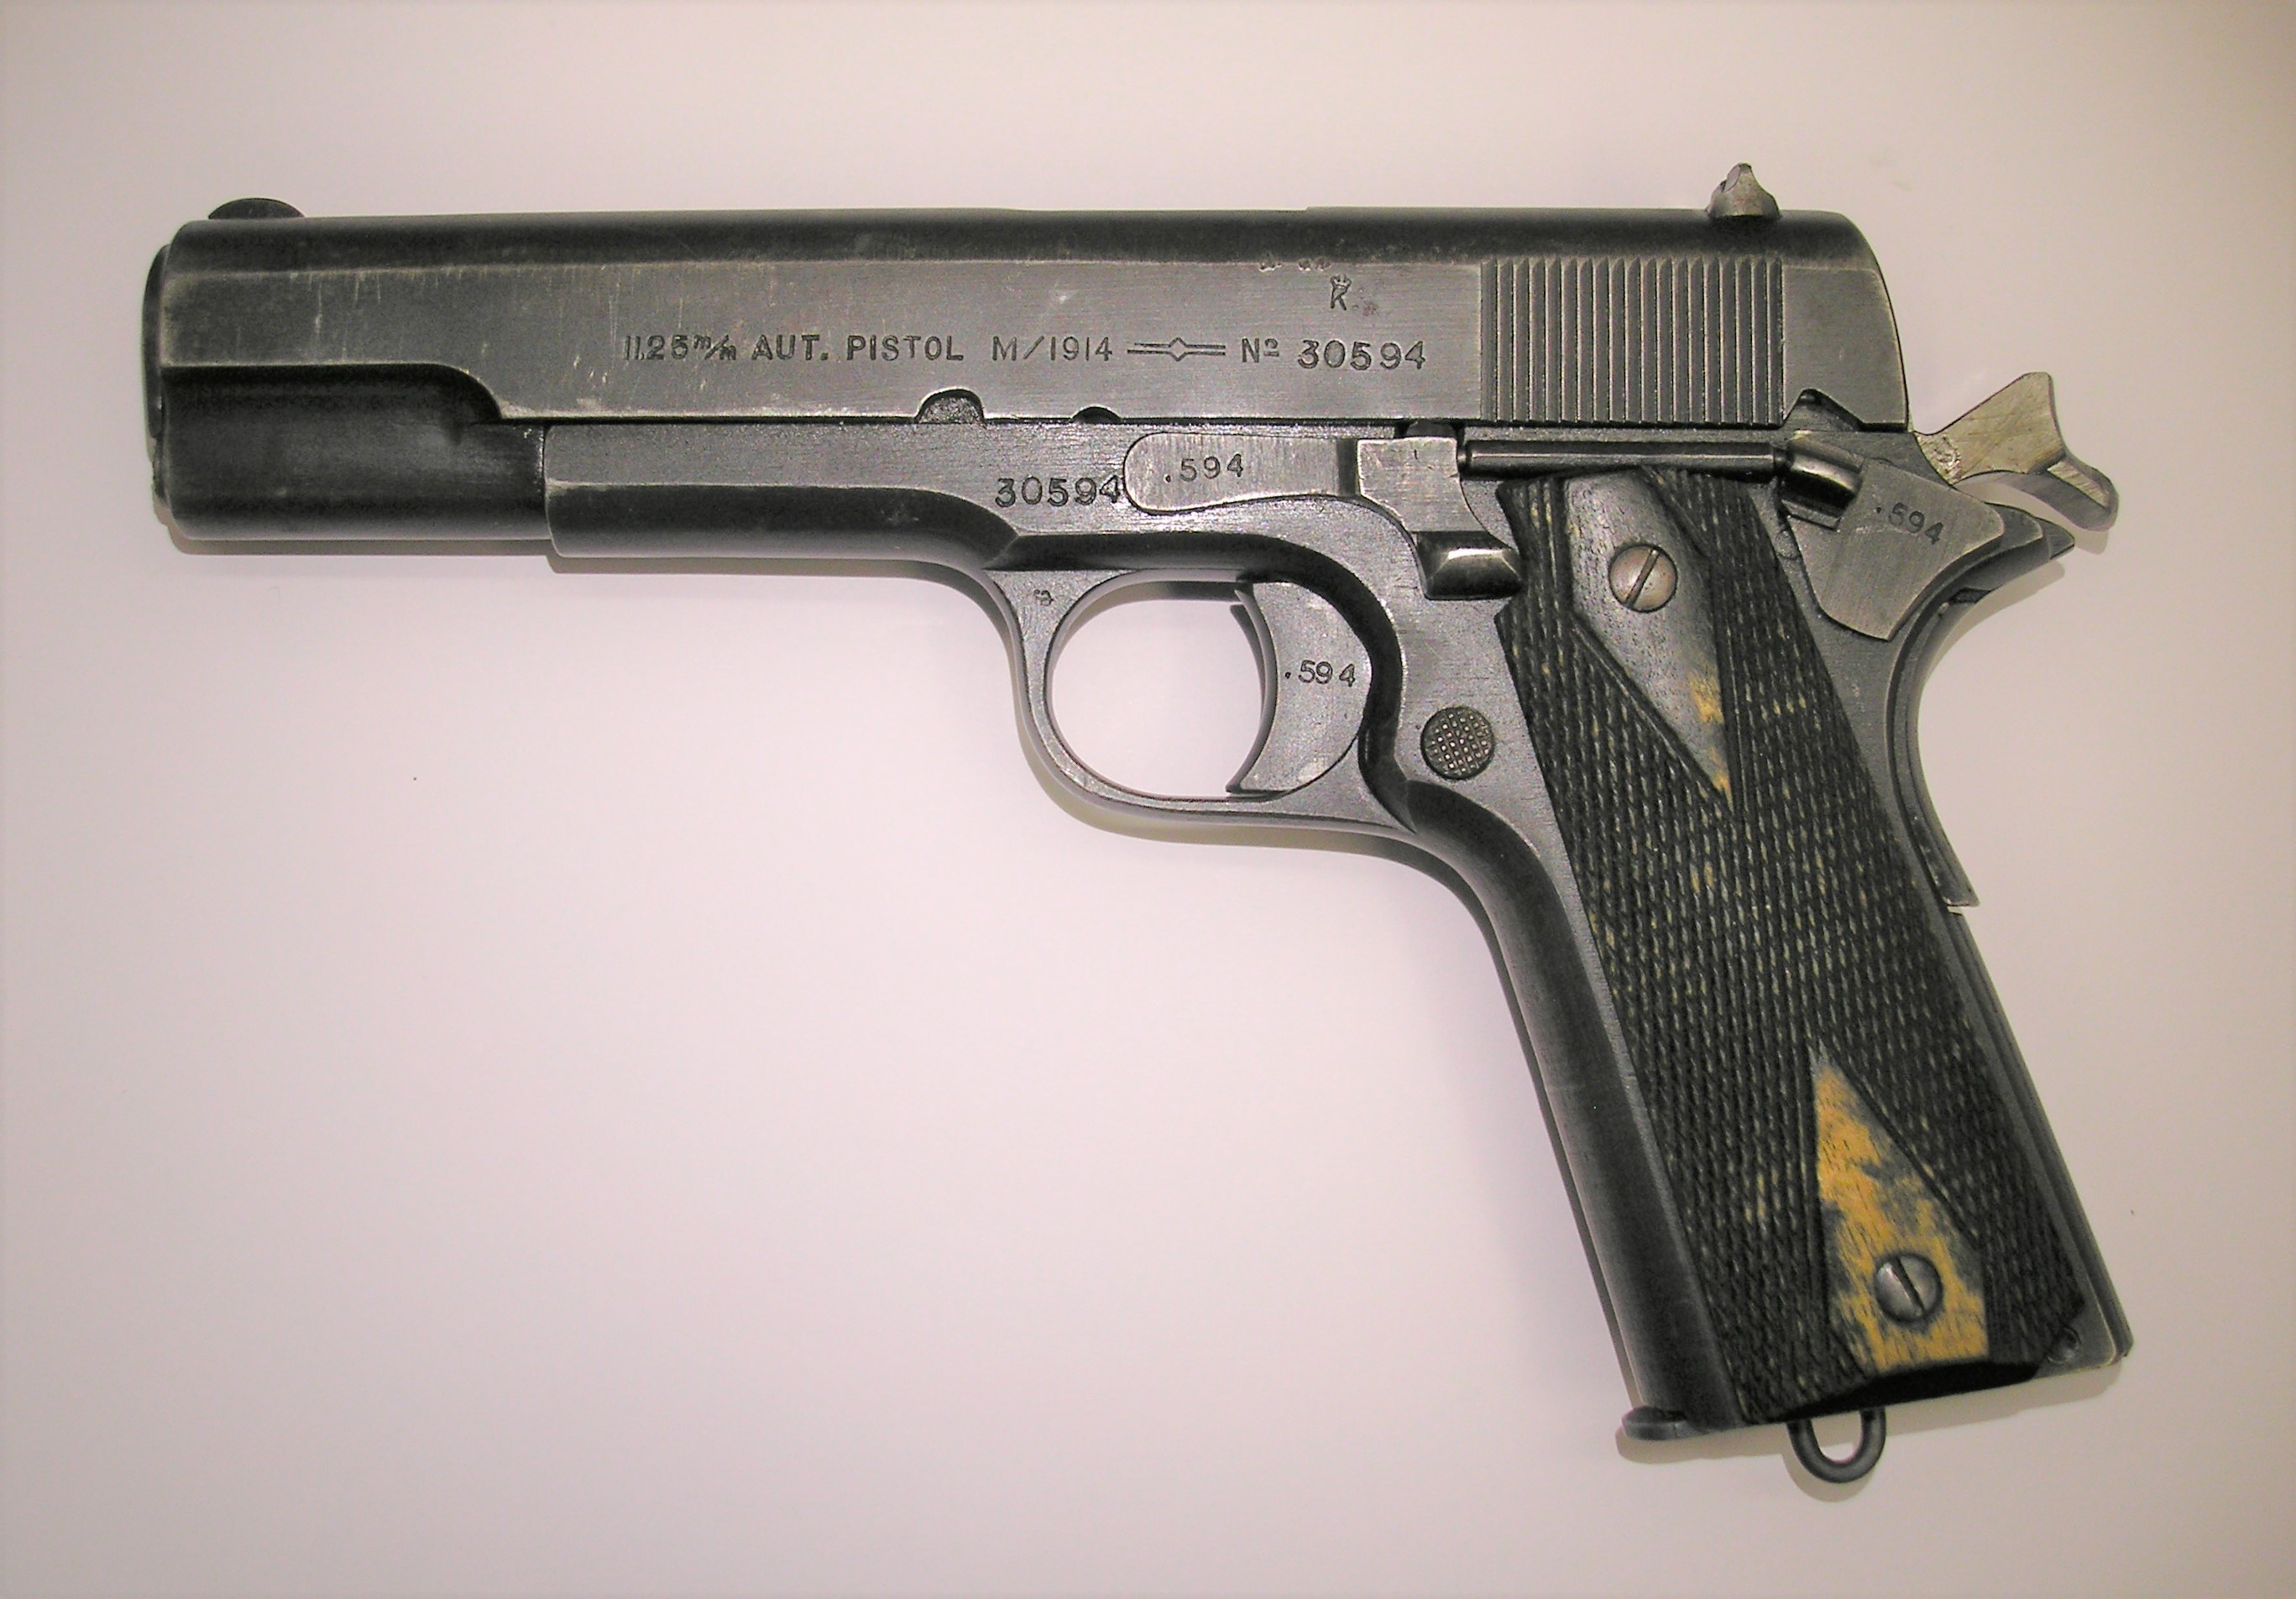 ./guns/pistol/bilder/Pistol-Kongsberg-M1914-1945-30594-2.JPG